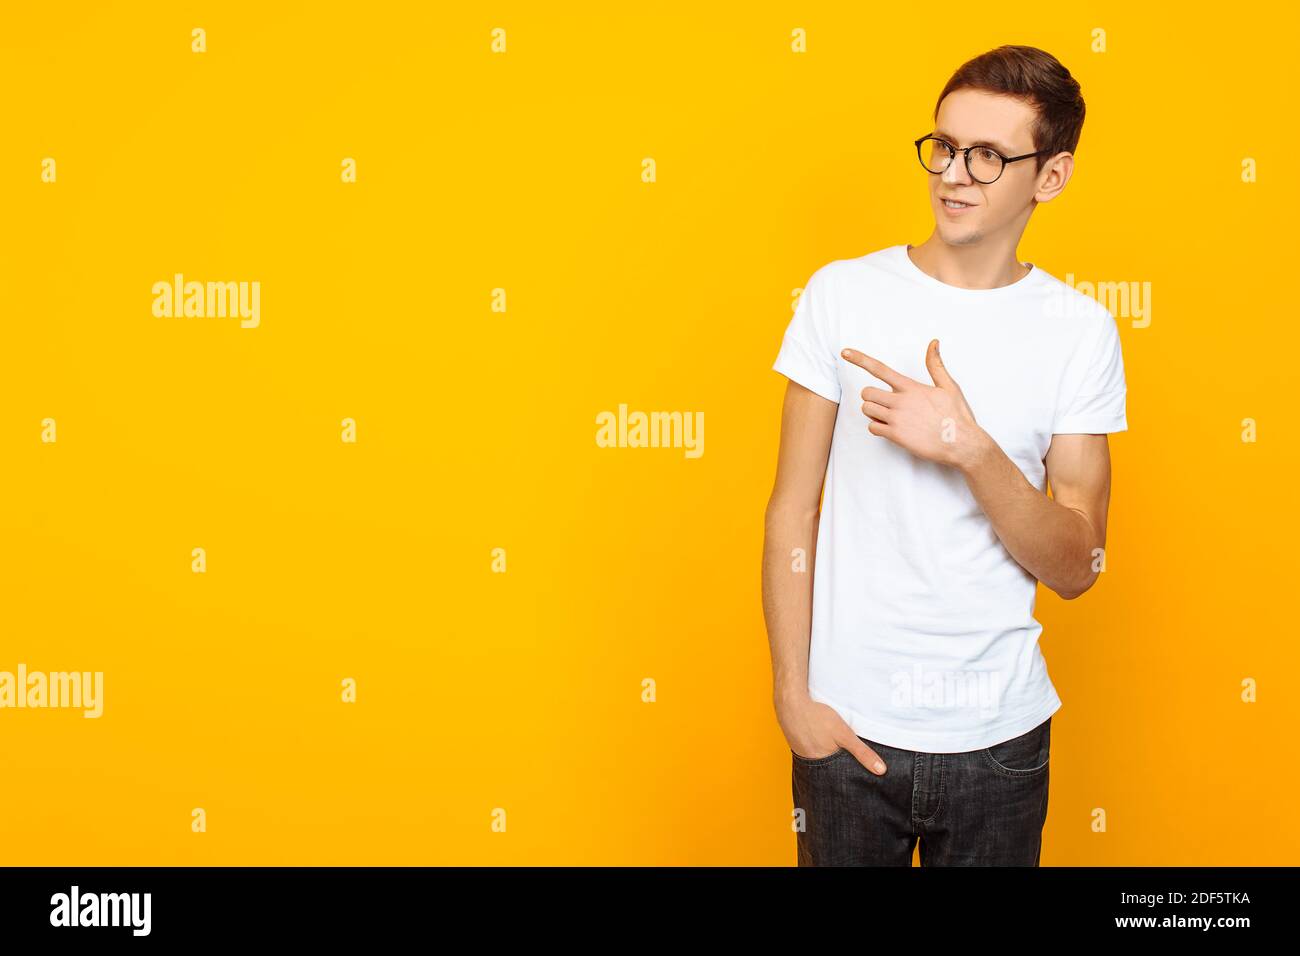 Hombre atractivo, con gafas, en blanco camiseta, apuntando con dos dedos al lado, apuntando al espacio vacío, sobre fondo amarillo Foto de stock